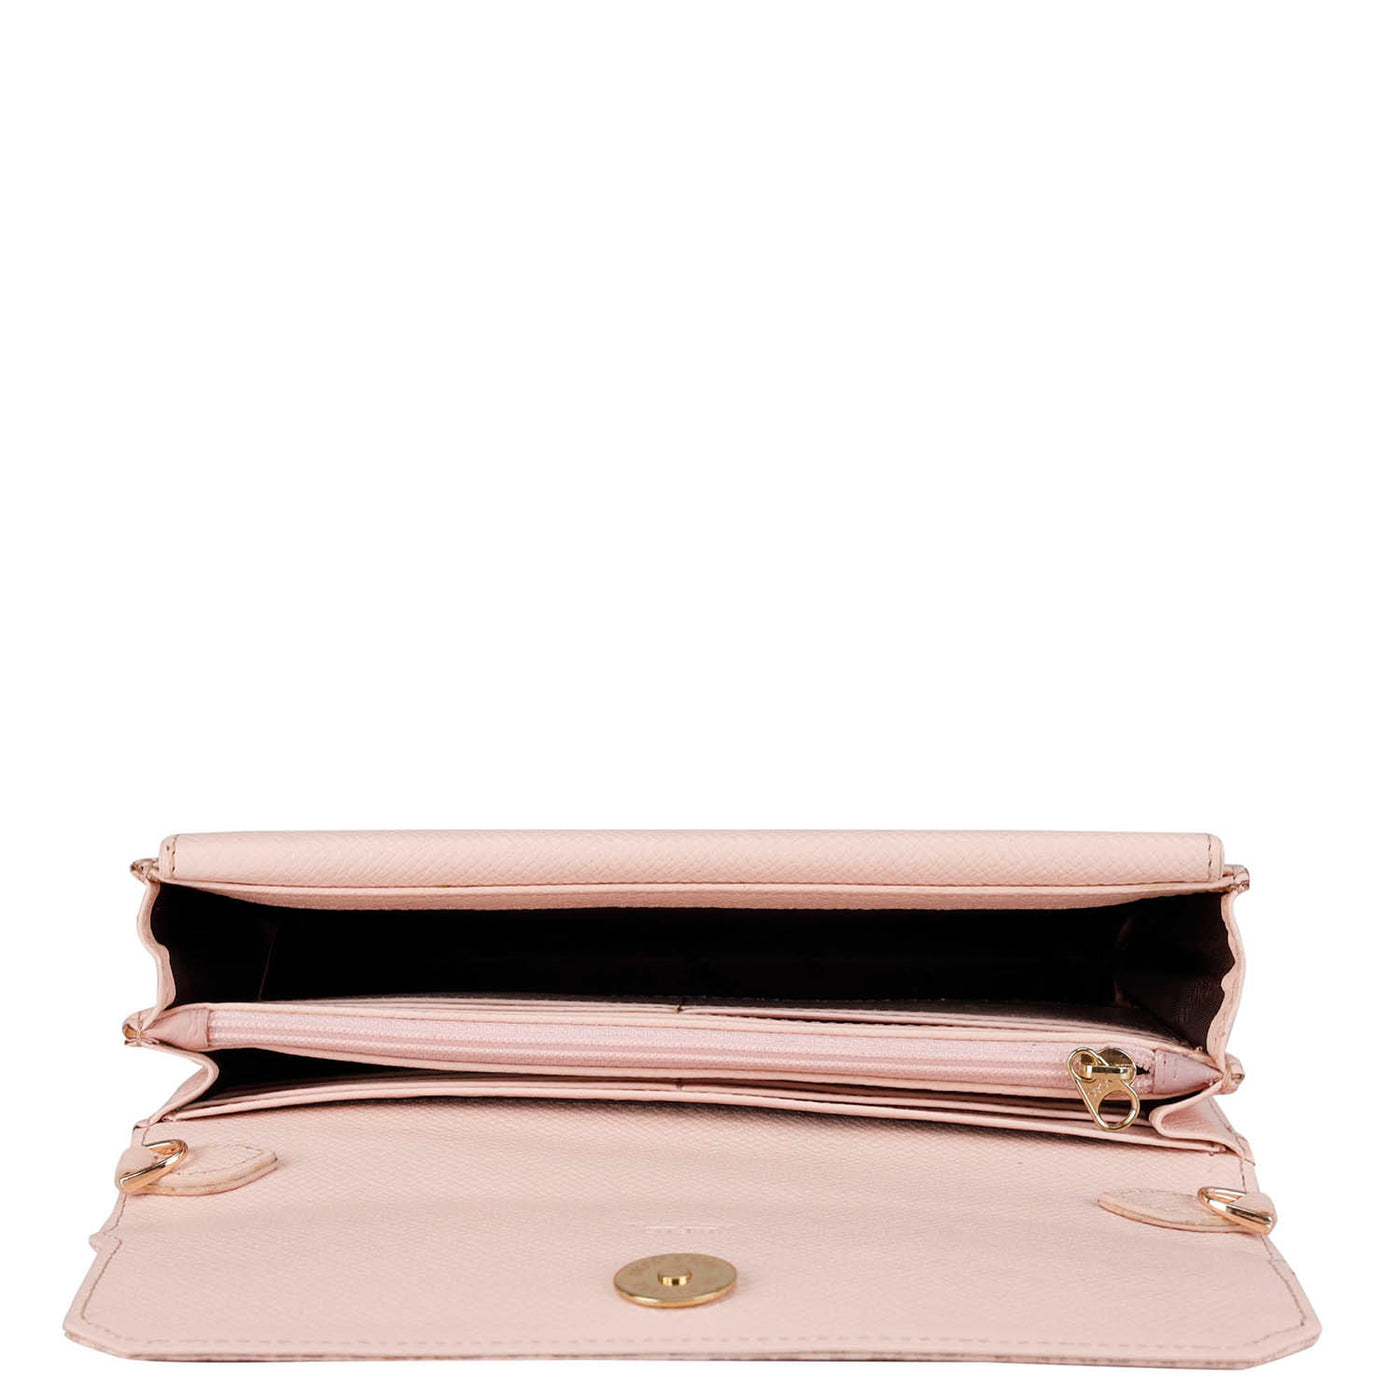 Monogram Leather Ladies Wallet - Blush